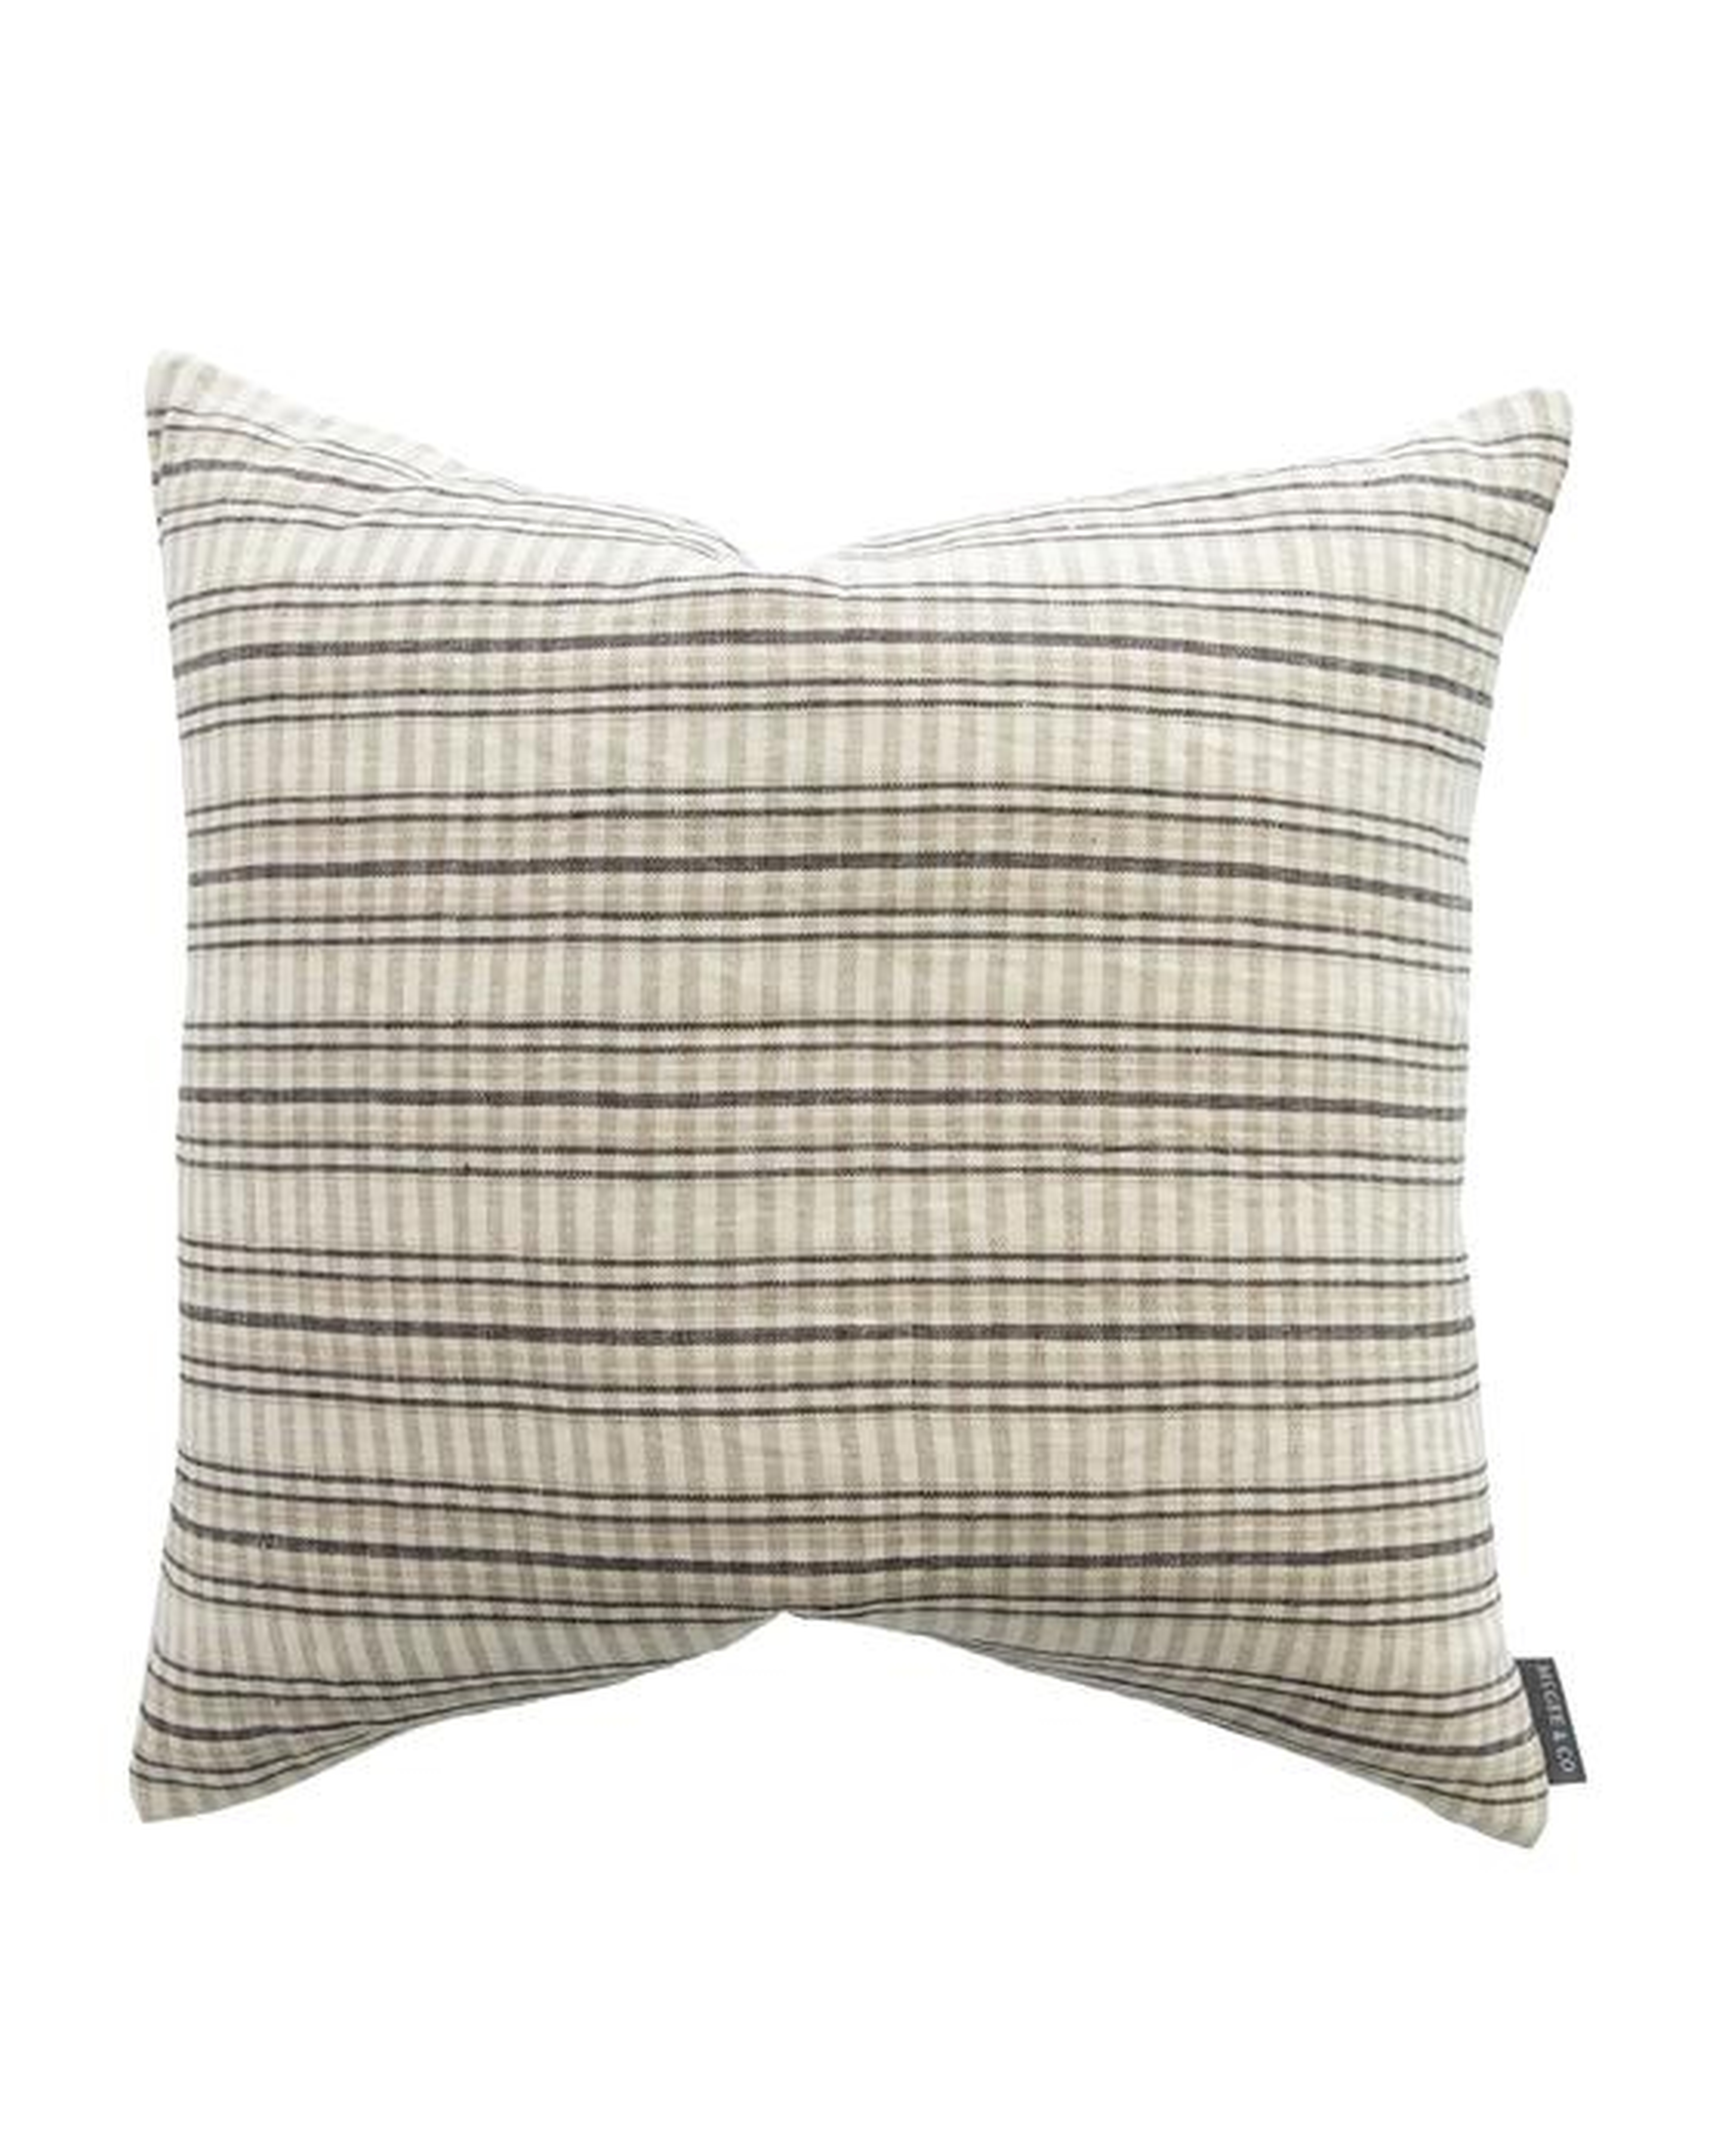 Mason Woven Stripe Pillow Cover - McGee & Co.